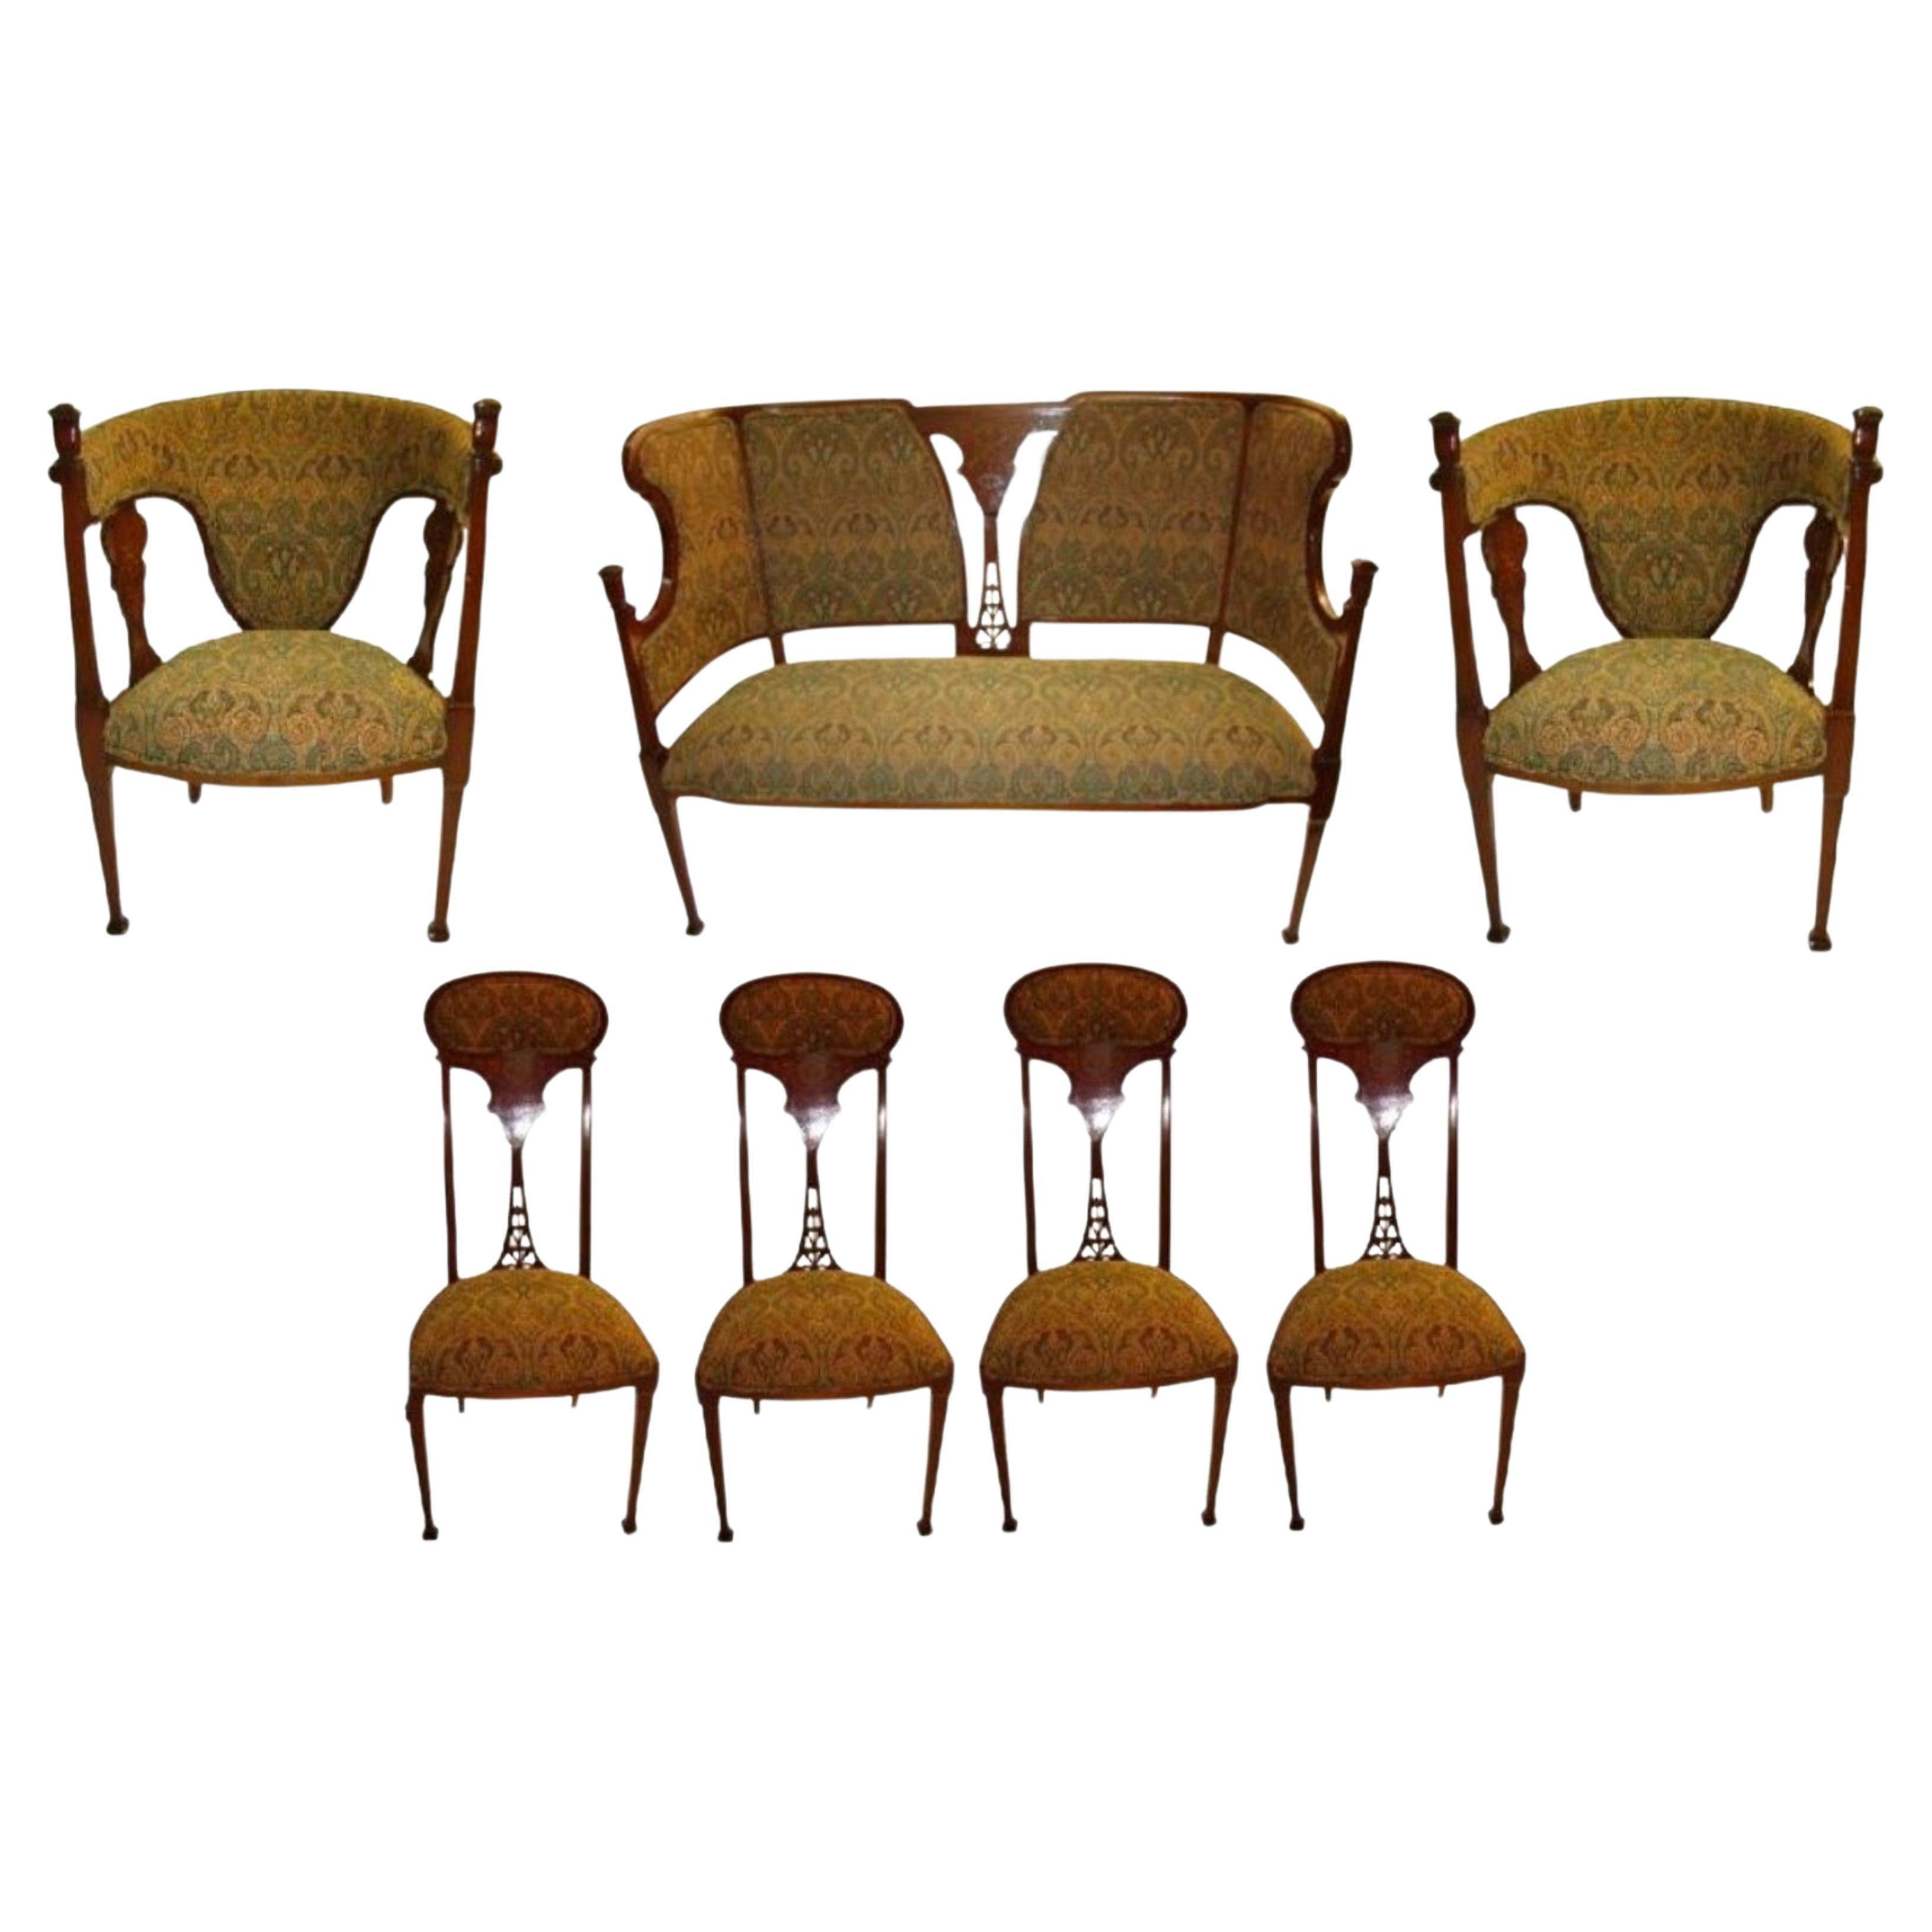 Jugendstil-Set, 1 Sofa, 2 Sessel, 4 Stühle, 1890, William Morris zugeschrieben